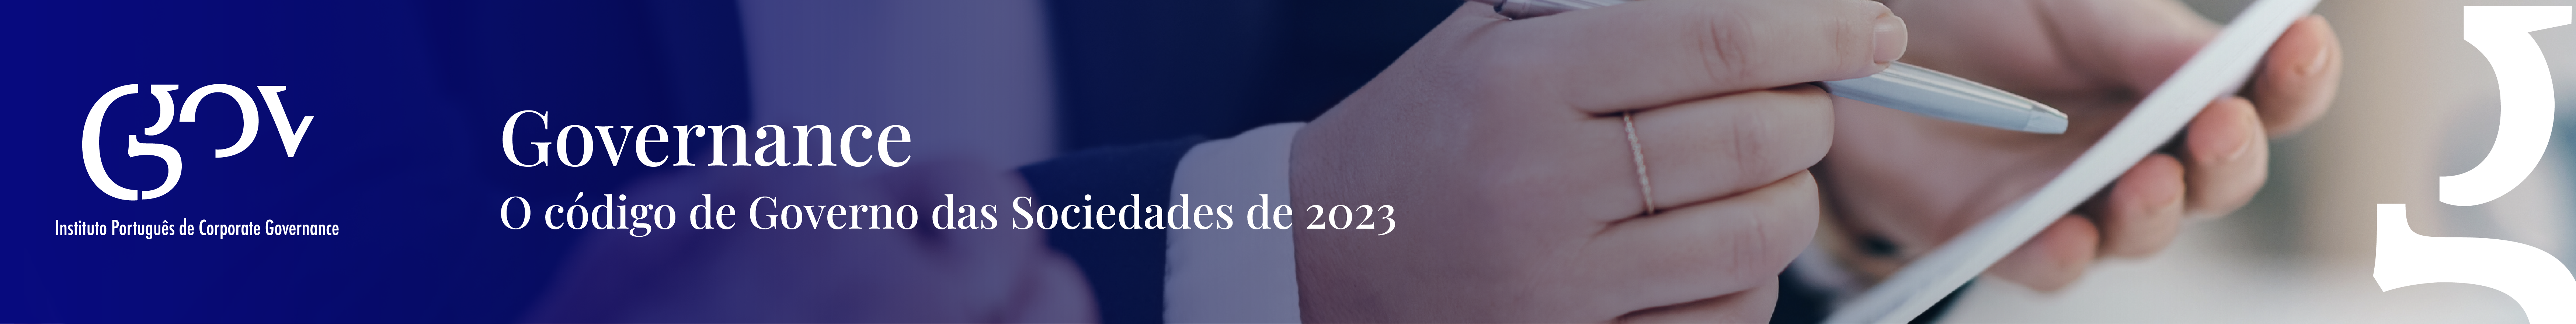 formatos-08 Save the Date | "O CÓDIGO DE GOVERNO DAS SOCIEDADES DE 2023"